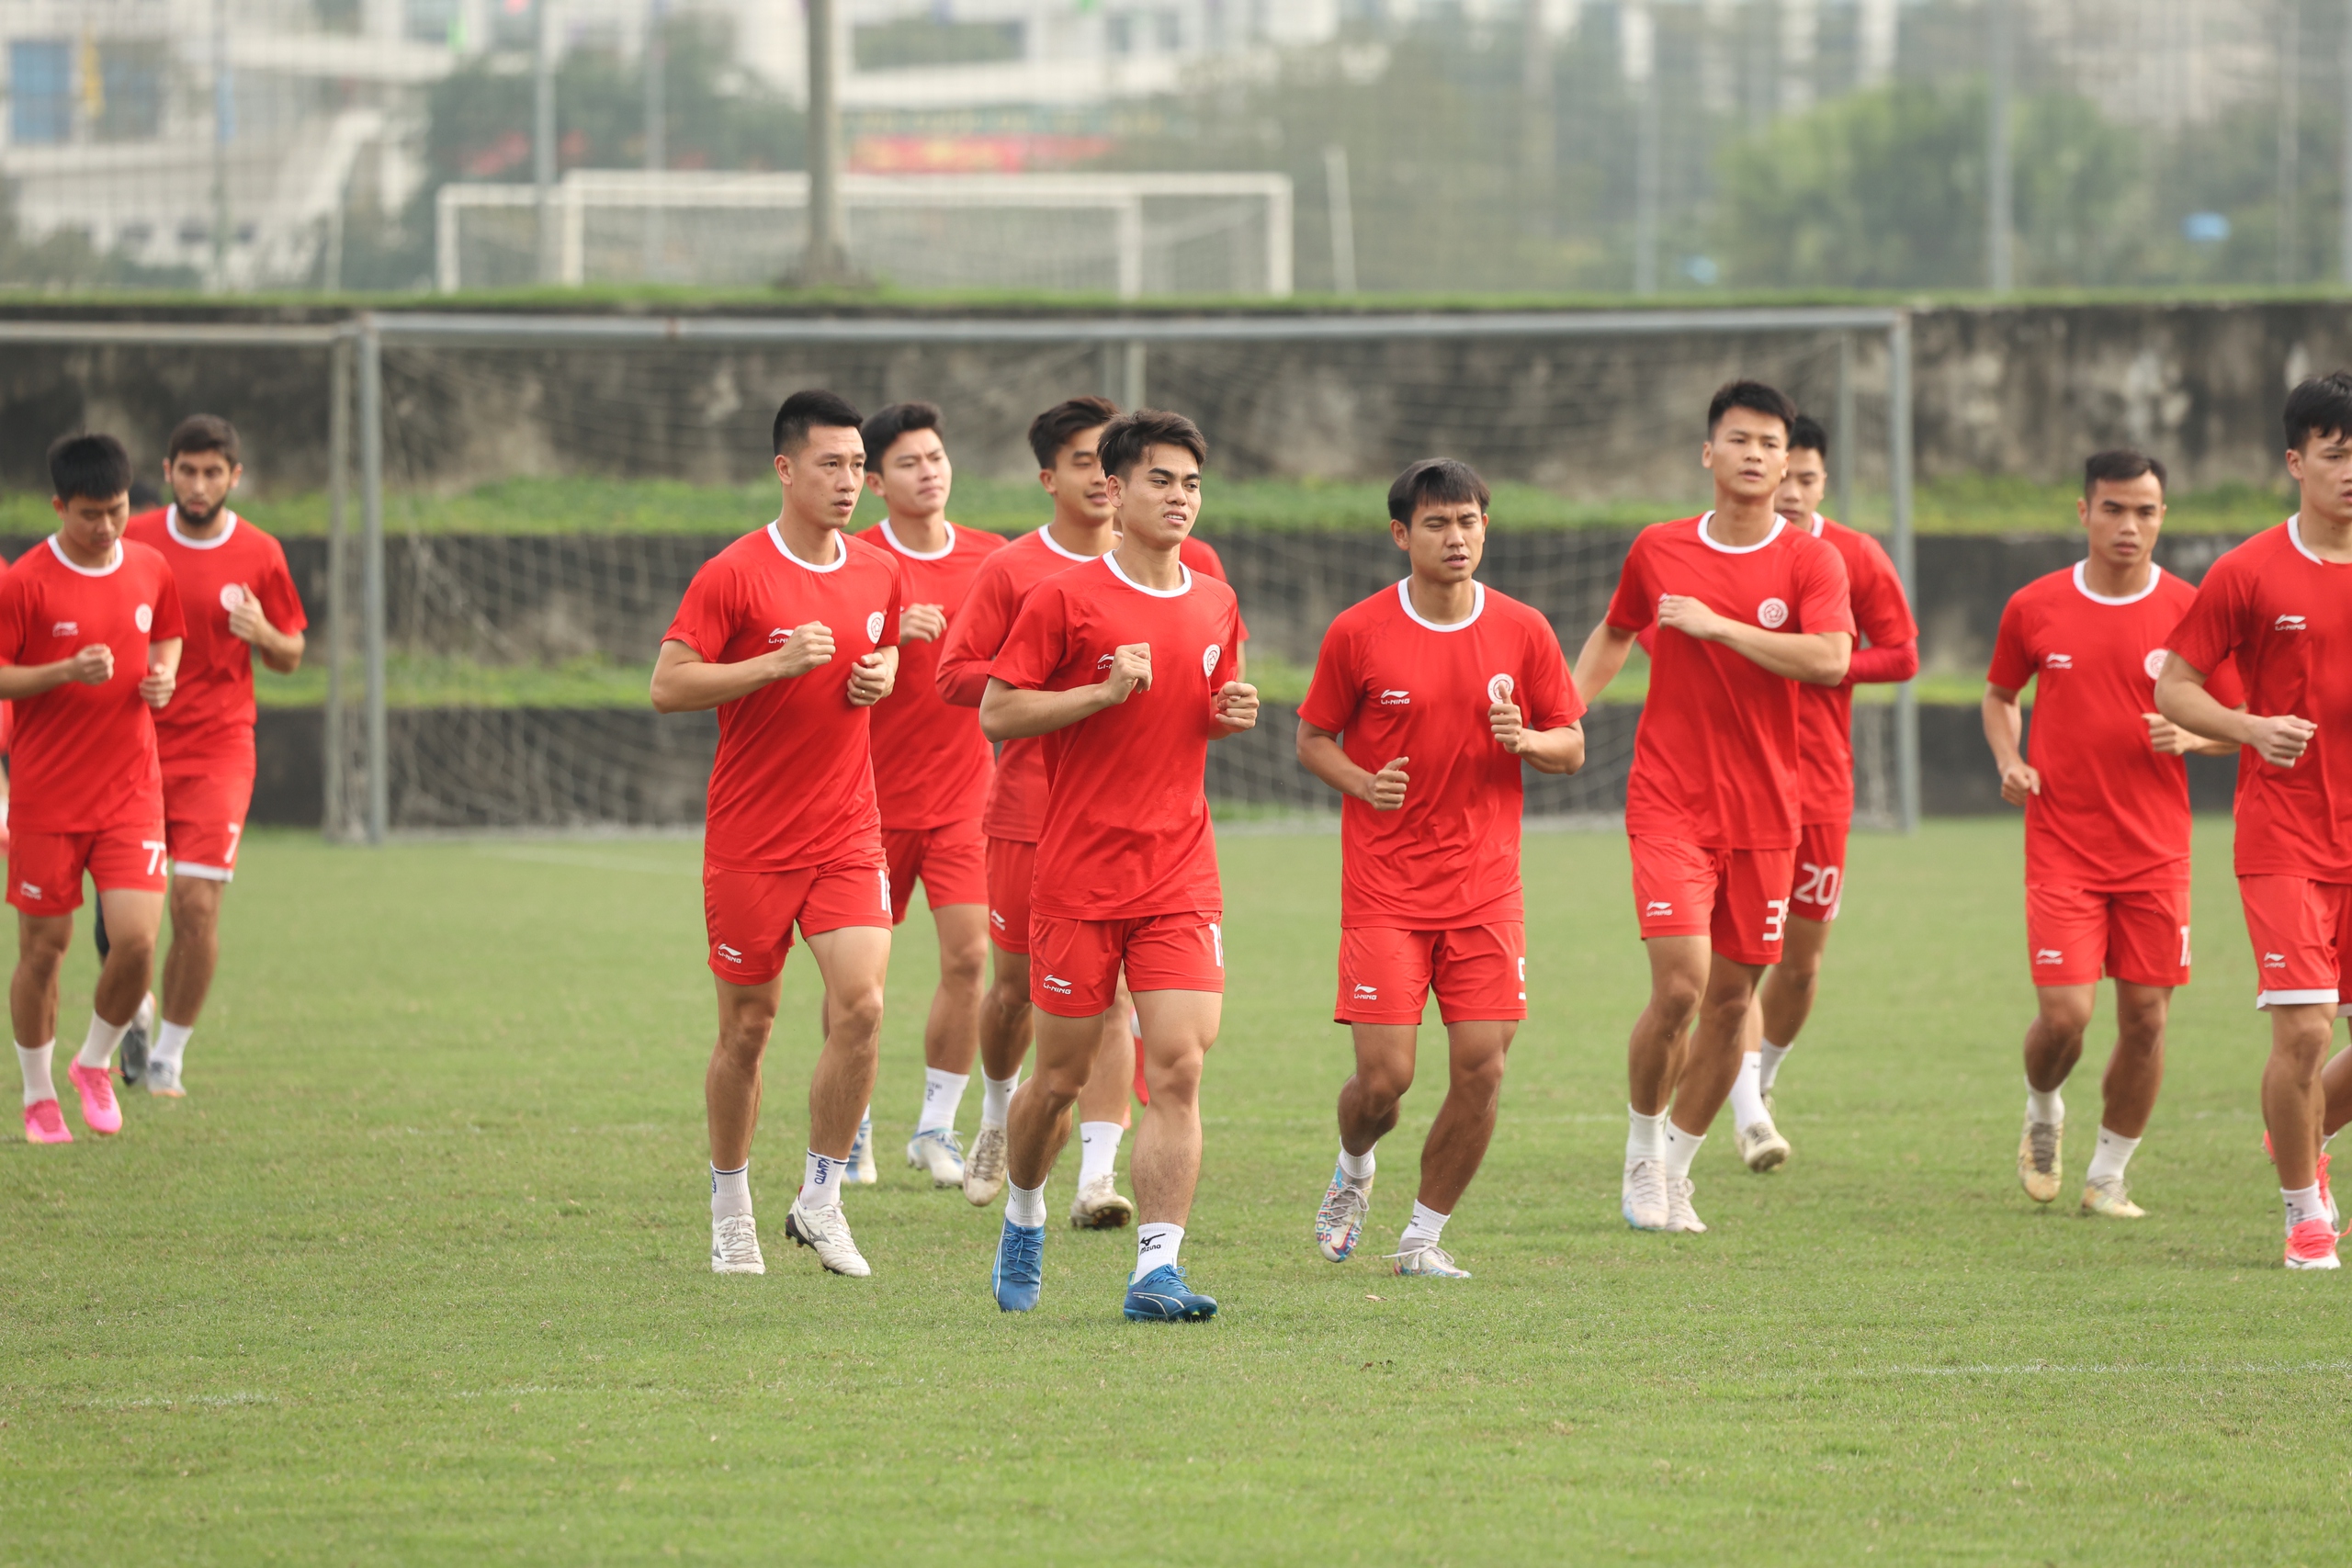 CLB Thể Công - Viettel tích cực tập luyện chuẩn bị đấu Khánh Hòa FC- Ảnh 1.